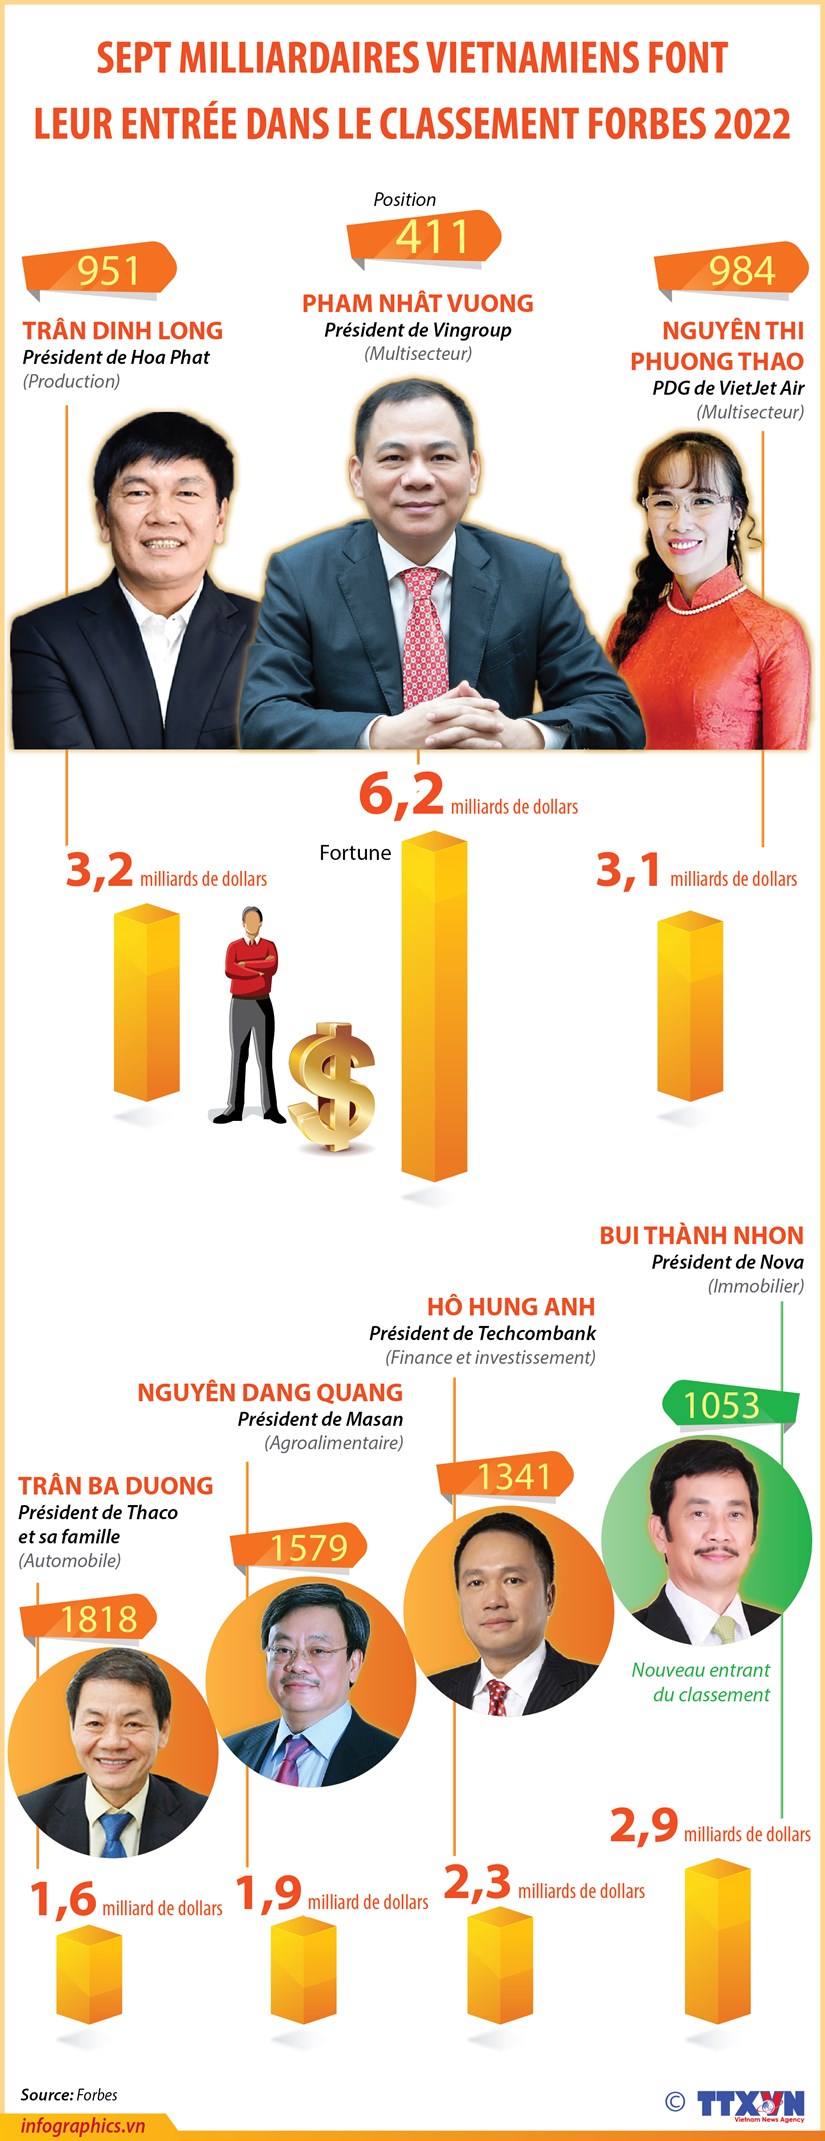 Sept milliardaires vietnamiens font leur entree dans le classement Forbes 2022 hinh anh 1